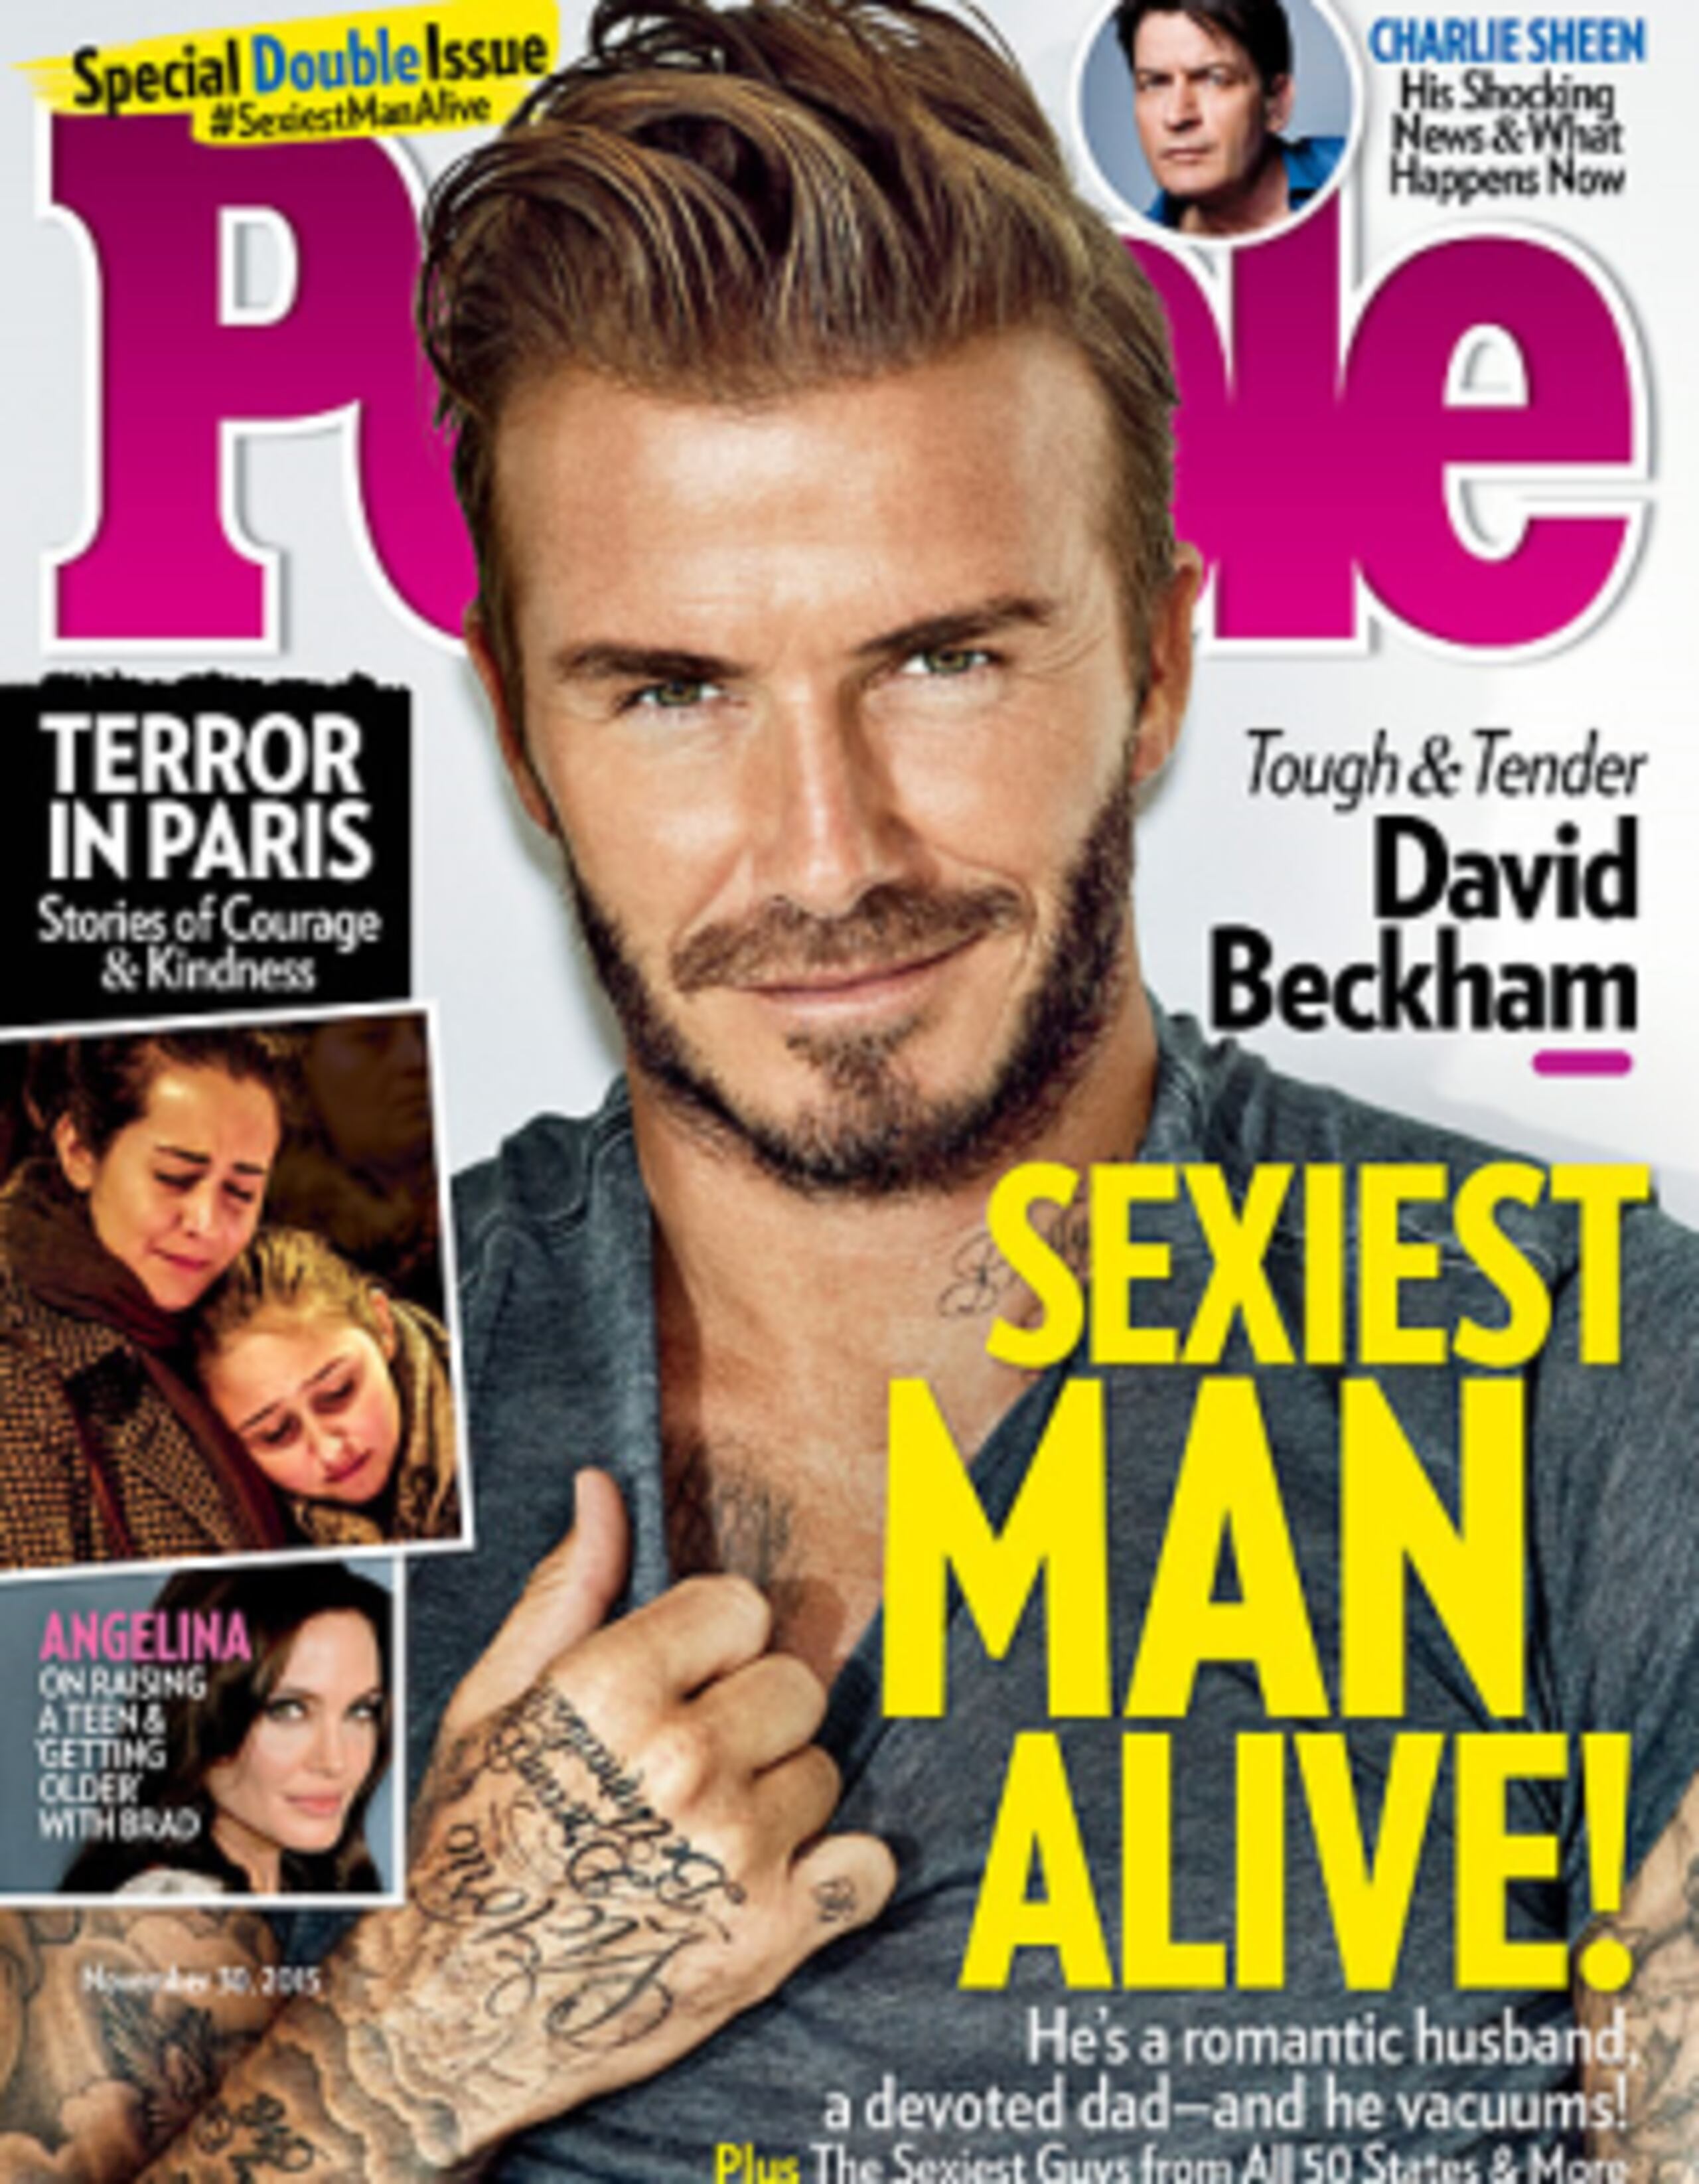 La edición con Beckham en portada estará a la venta a partir de este viernes. (People)